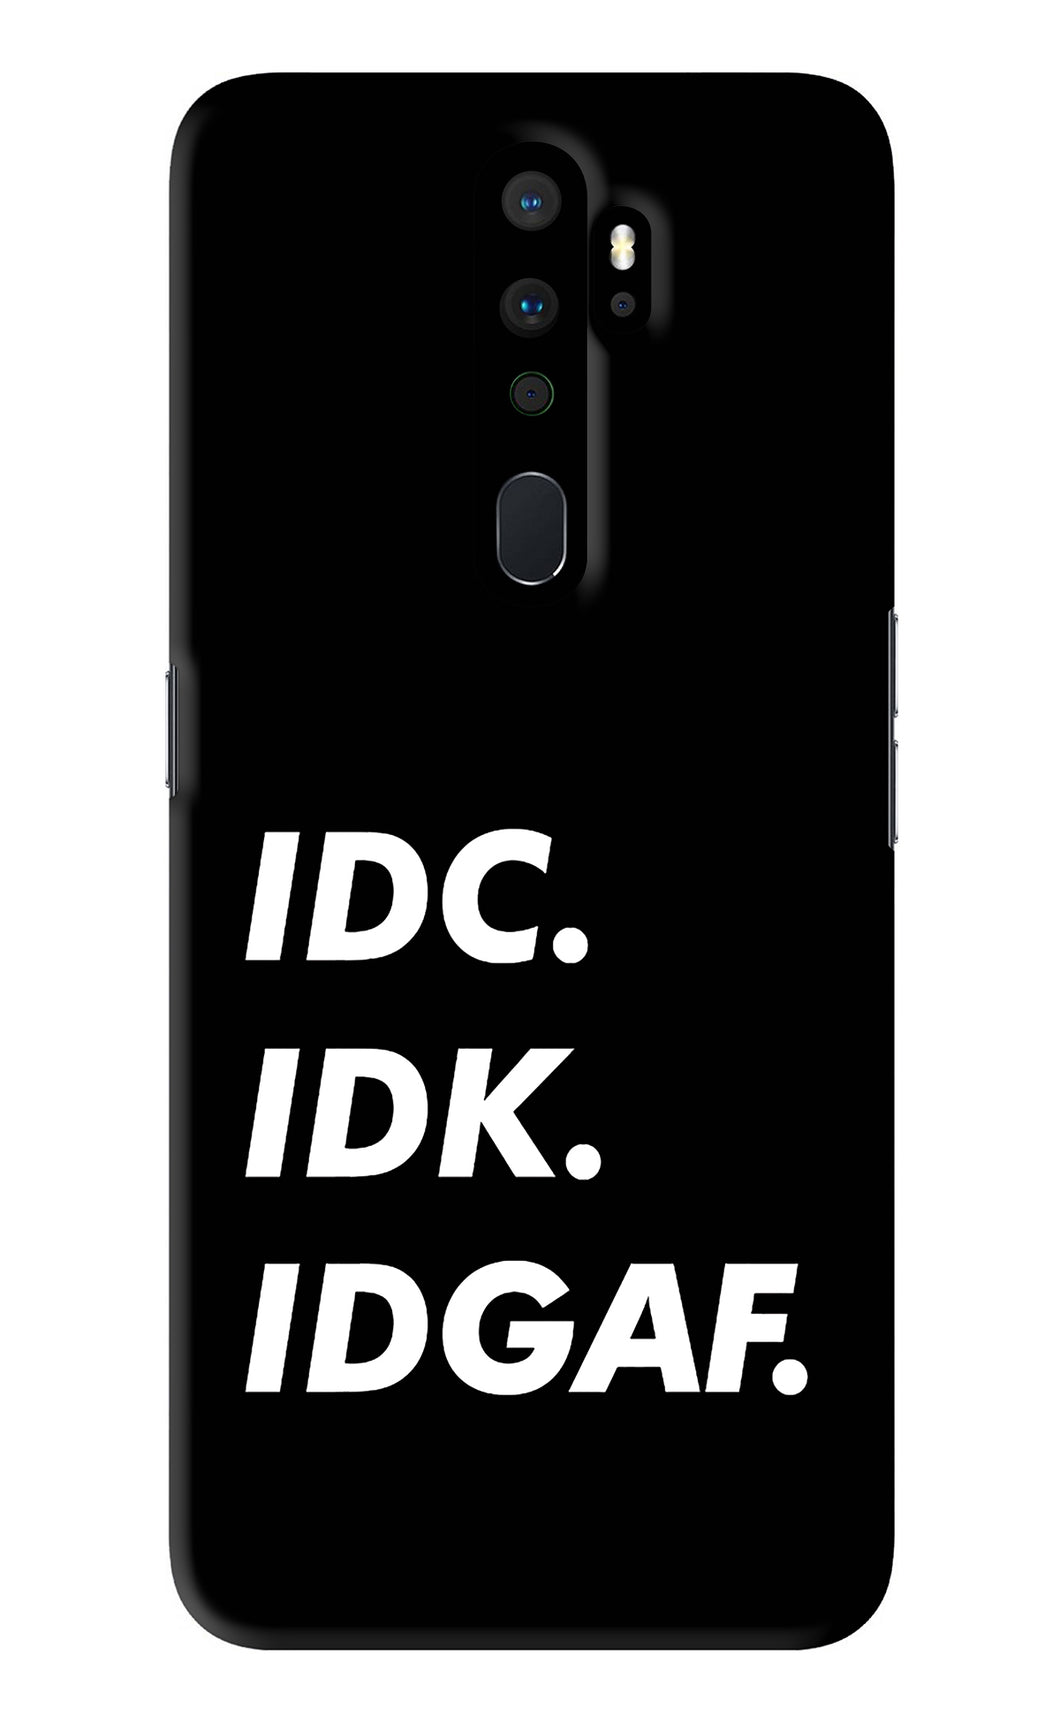 Idc Idk Idgaf Oppo A9 2020 Back Skin Wrap